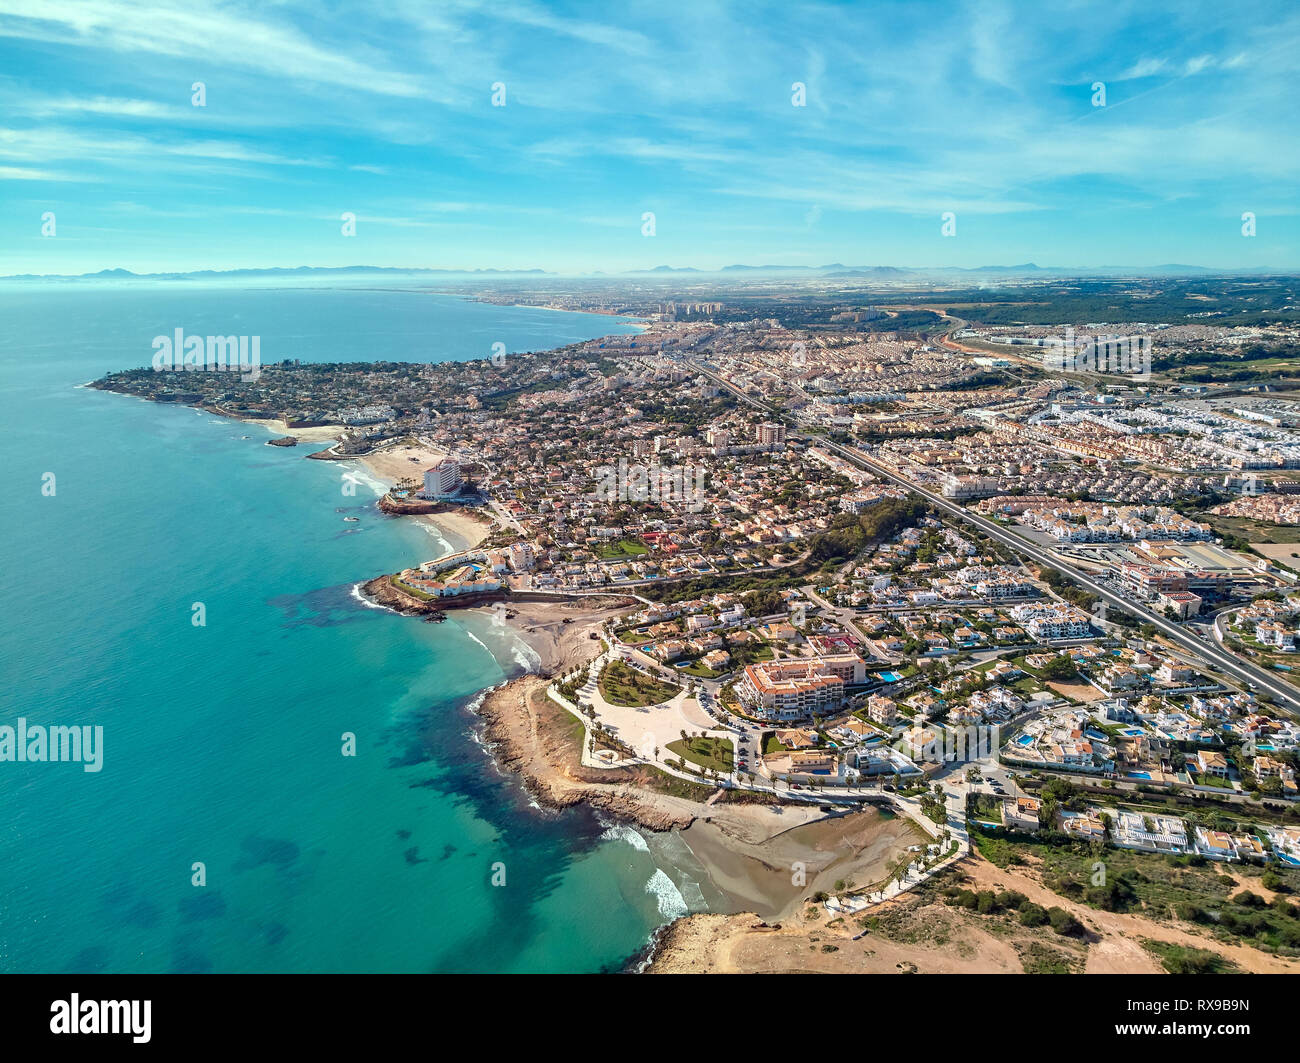 Costa Blanca Vue de dessus, point de vue drone photographie aérienne. Côte rocheuse de l'eau vert turquoise, plages de sable. Cityscape Torrevieja Espagne Banque D'Images